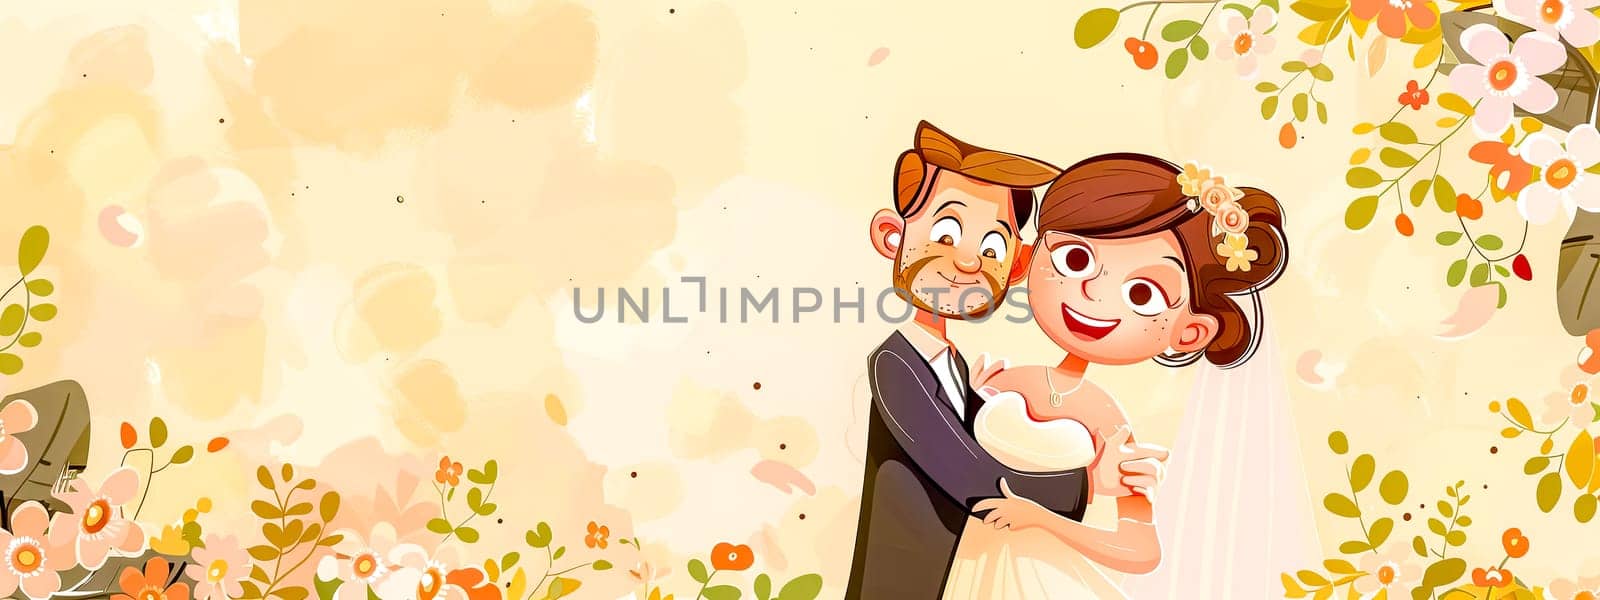 Joyful Cartoon Wedding Couple with Floral Background by Edophoto